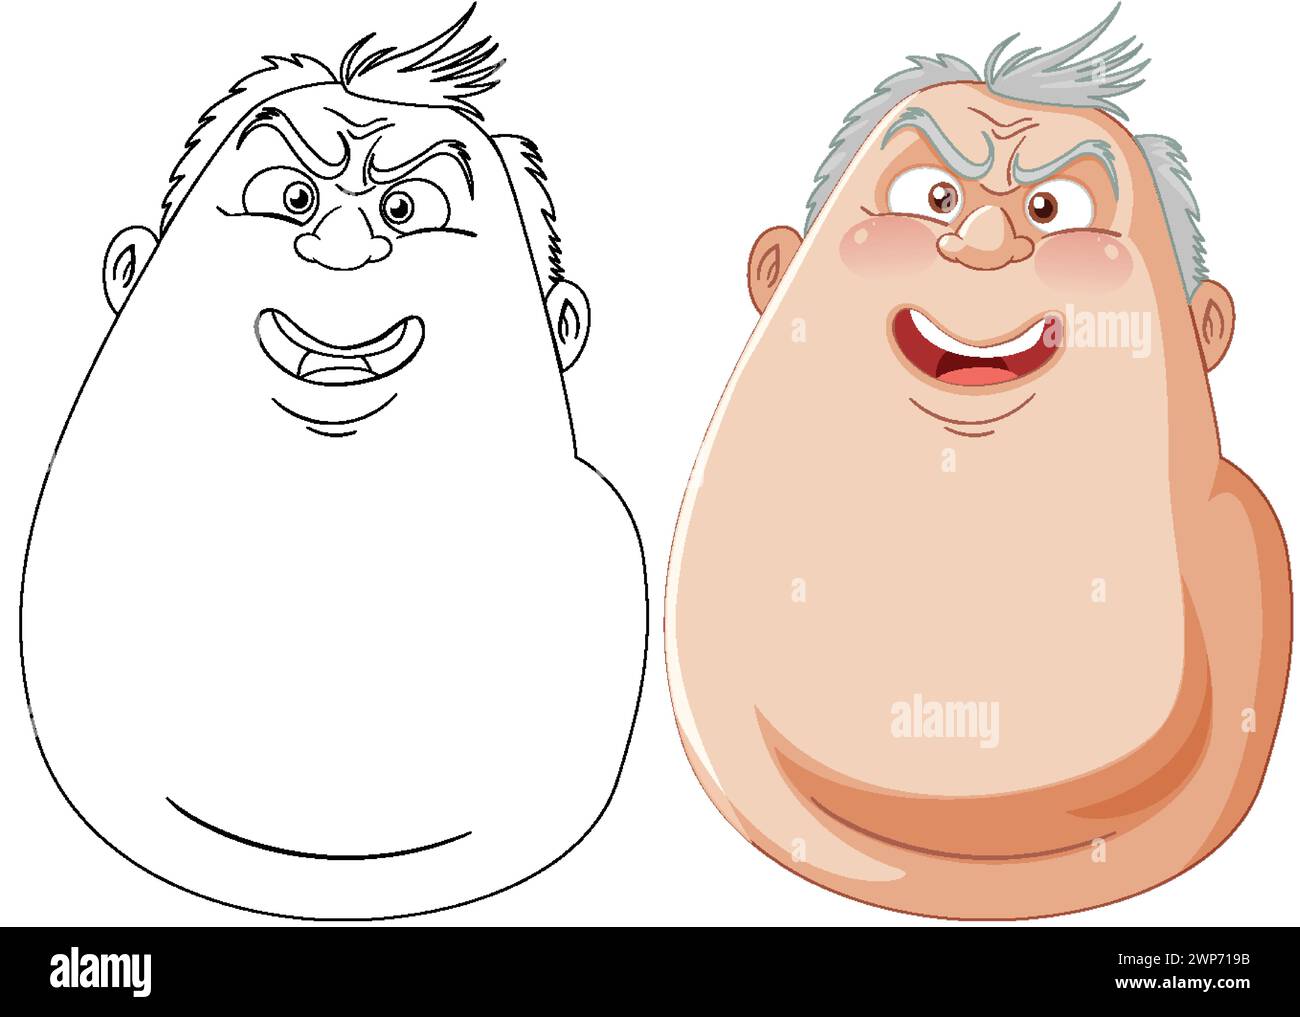 Deux personnages de dessins animés montrant des émotions différentes Illustration de Vecteur